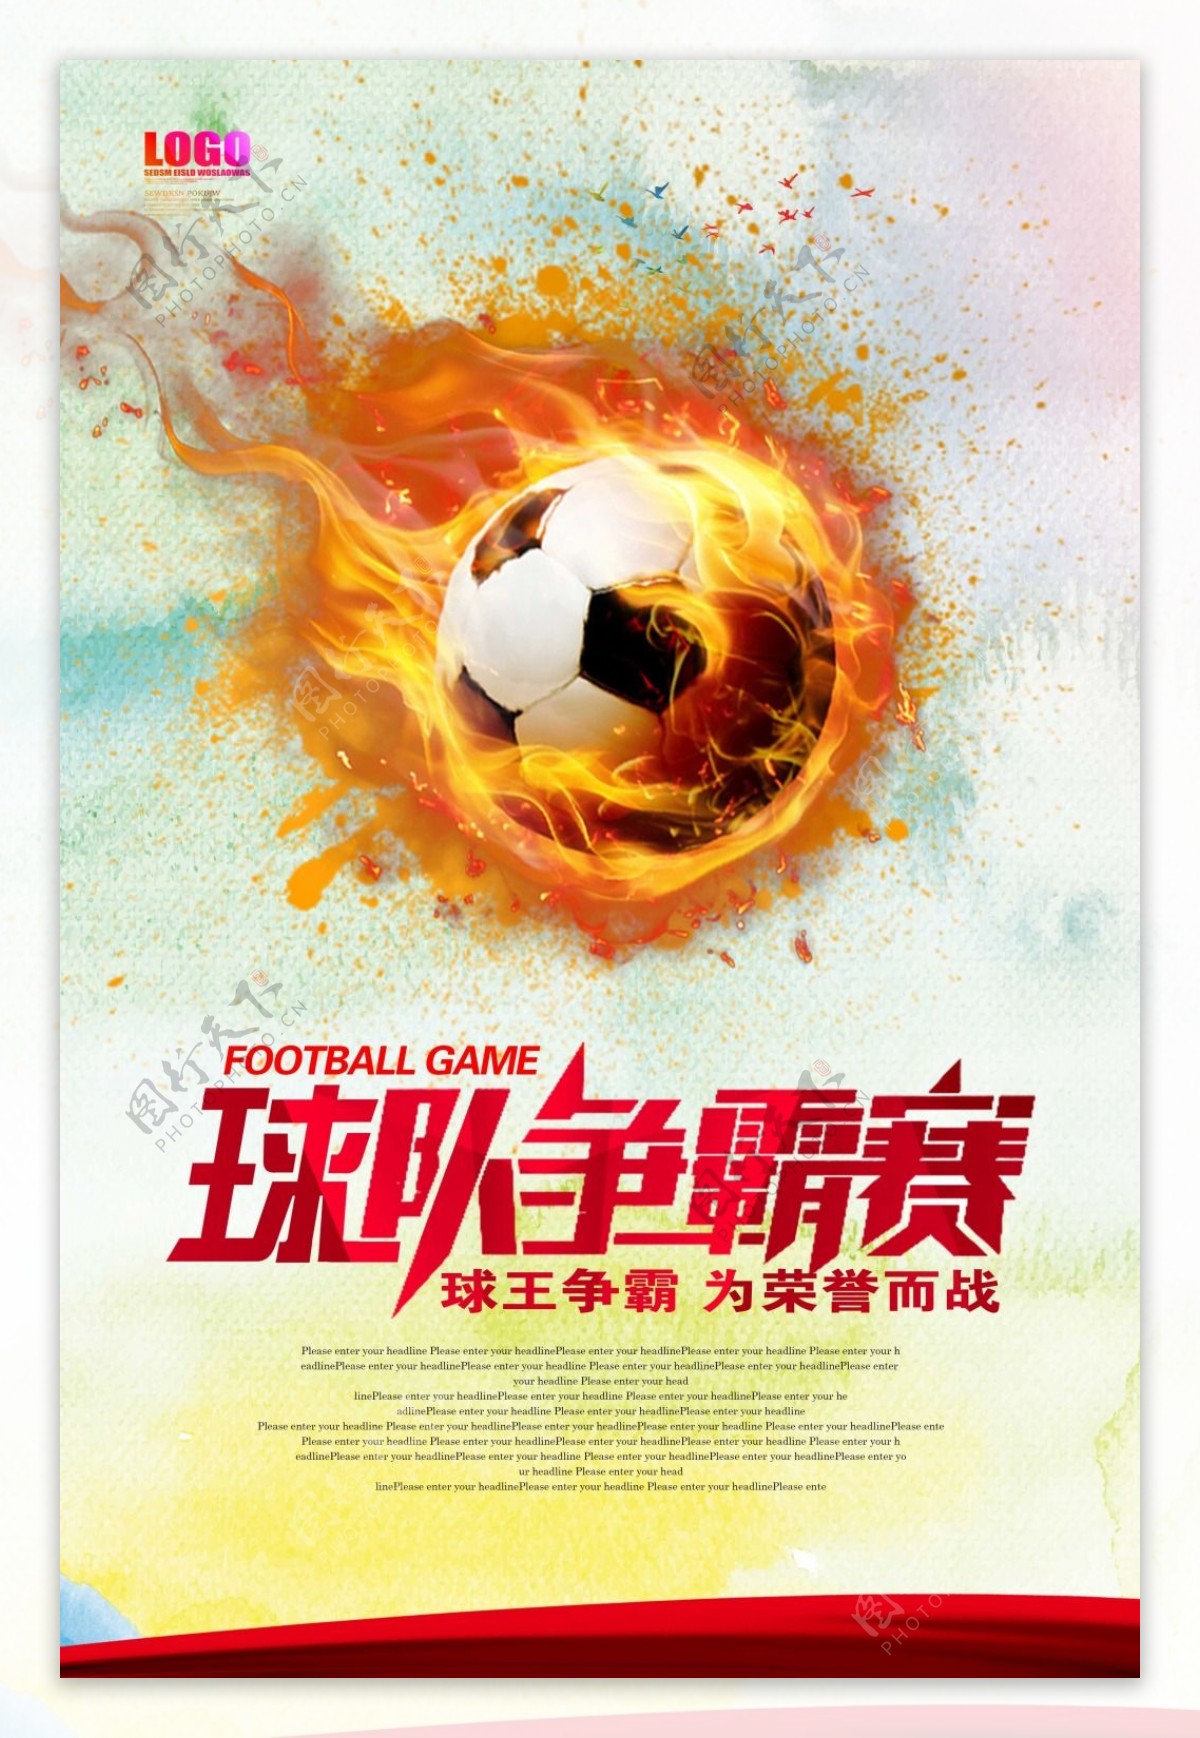 足球争霸赛海报设计